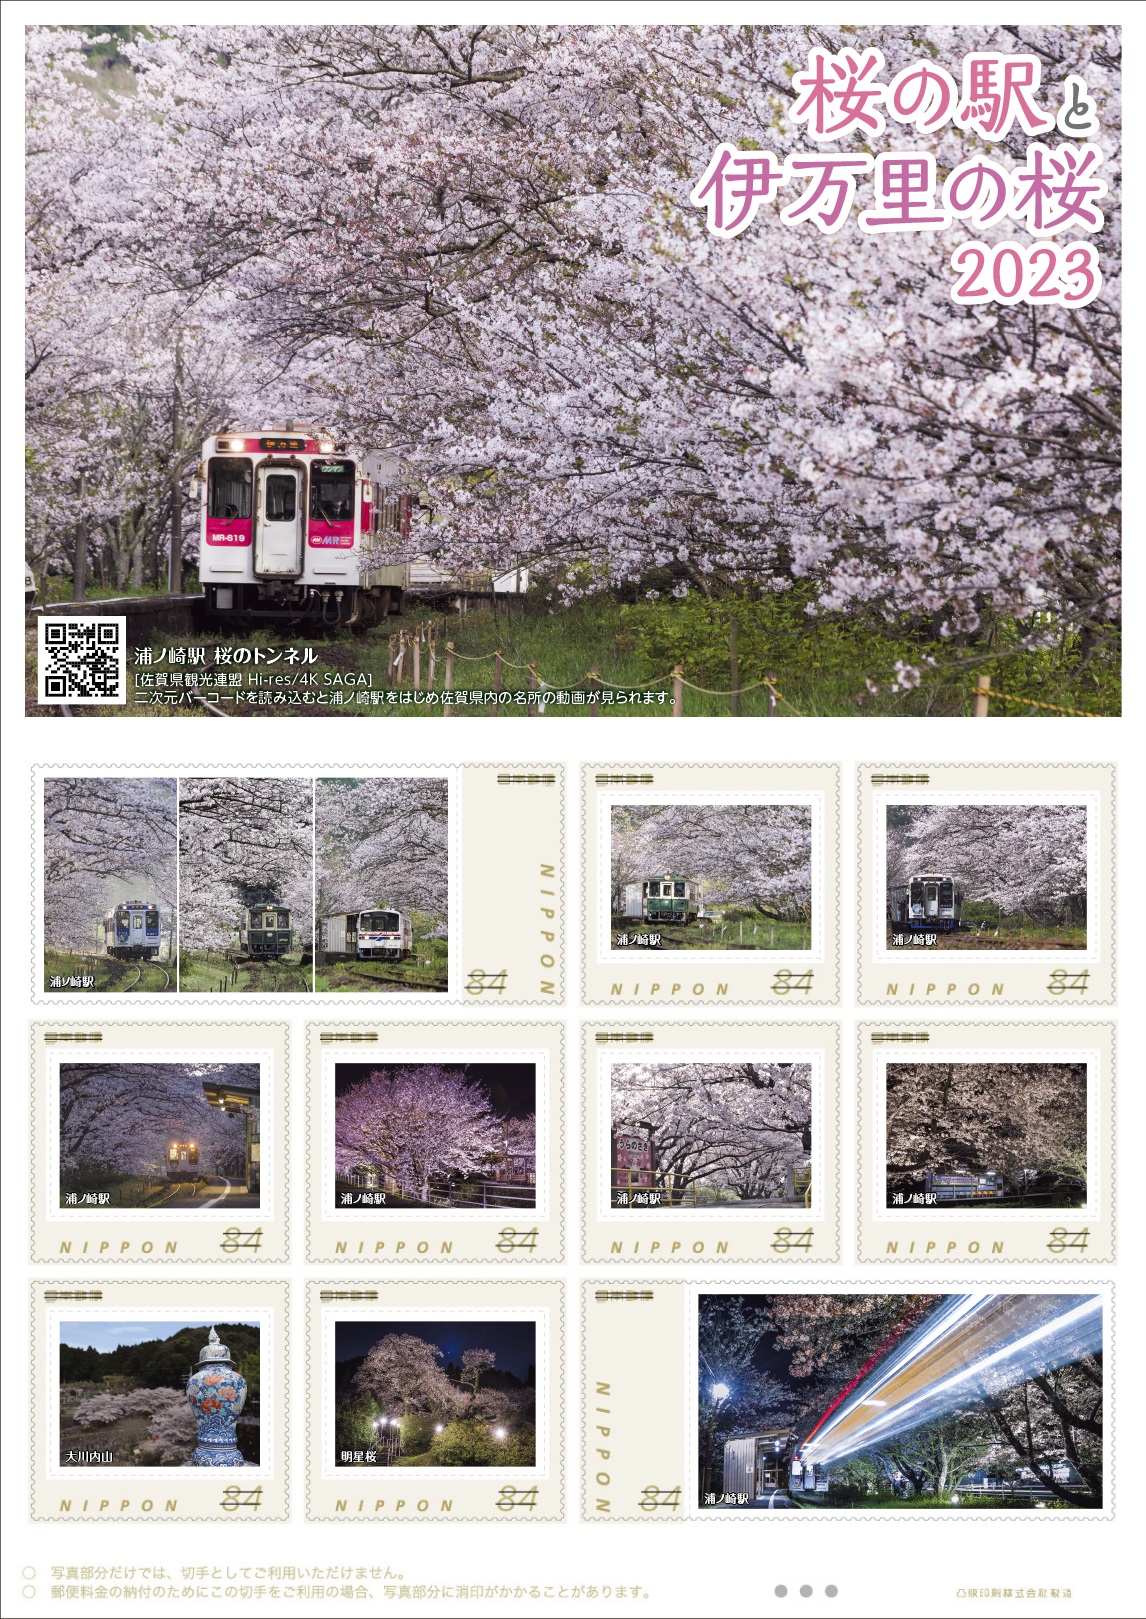 オリジナル フレーム切手 「桜の駅と伊万里の桜2023」の販売開始と贈呈式の開催